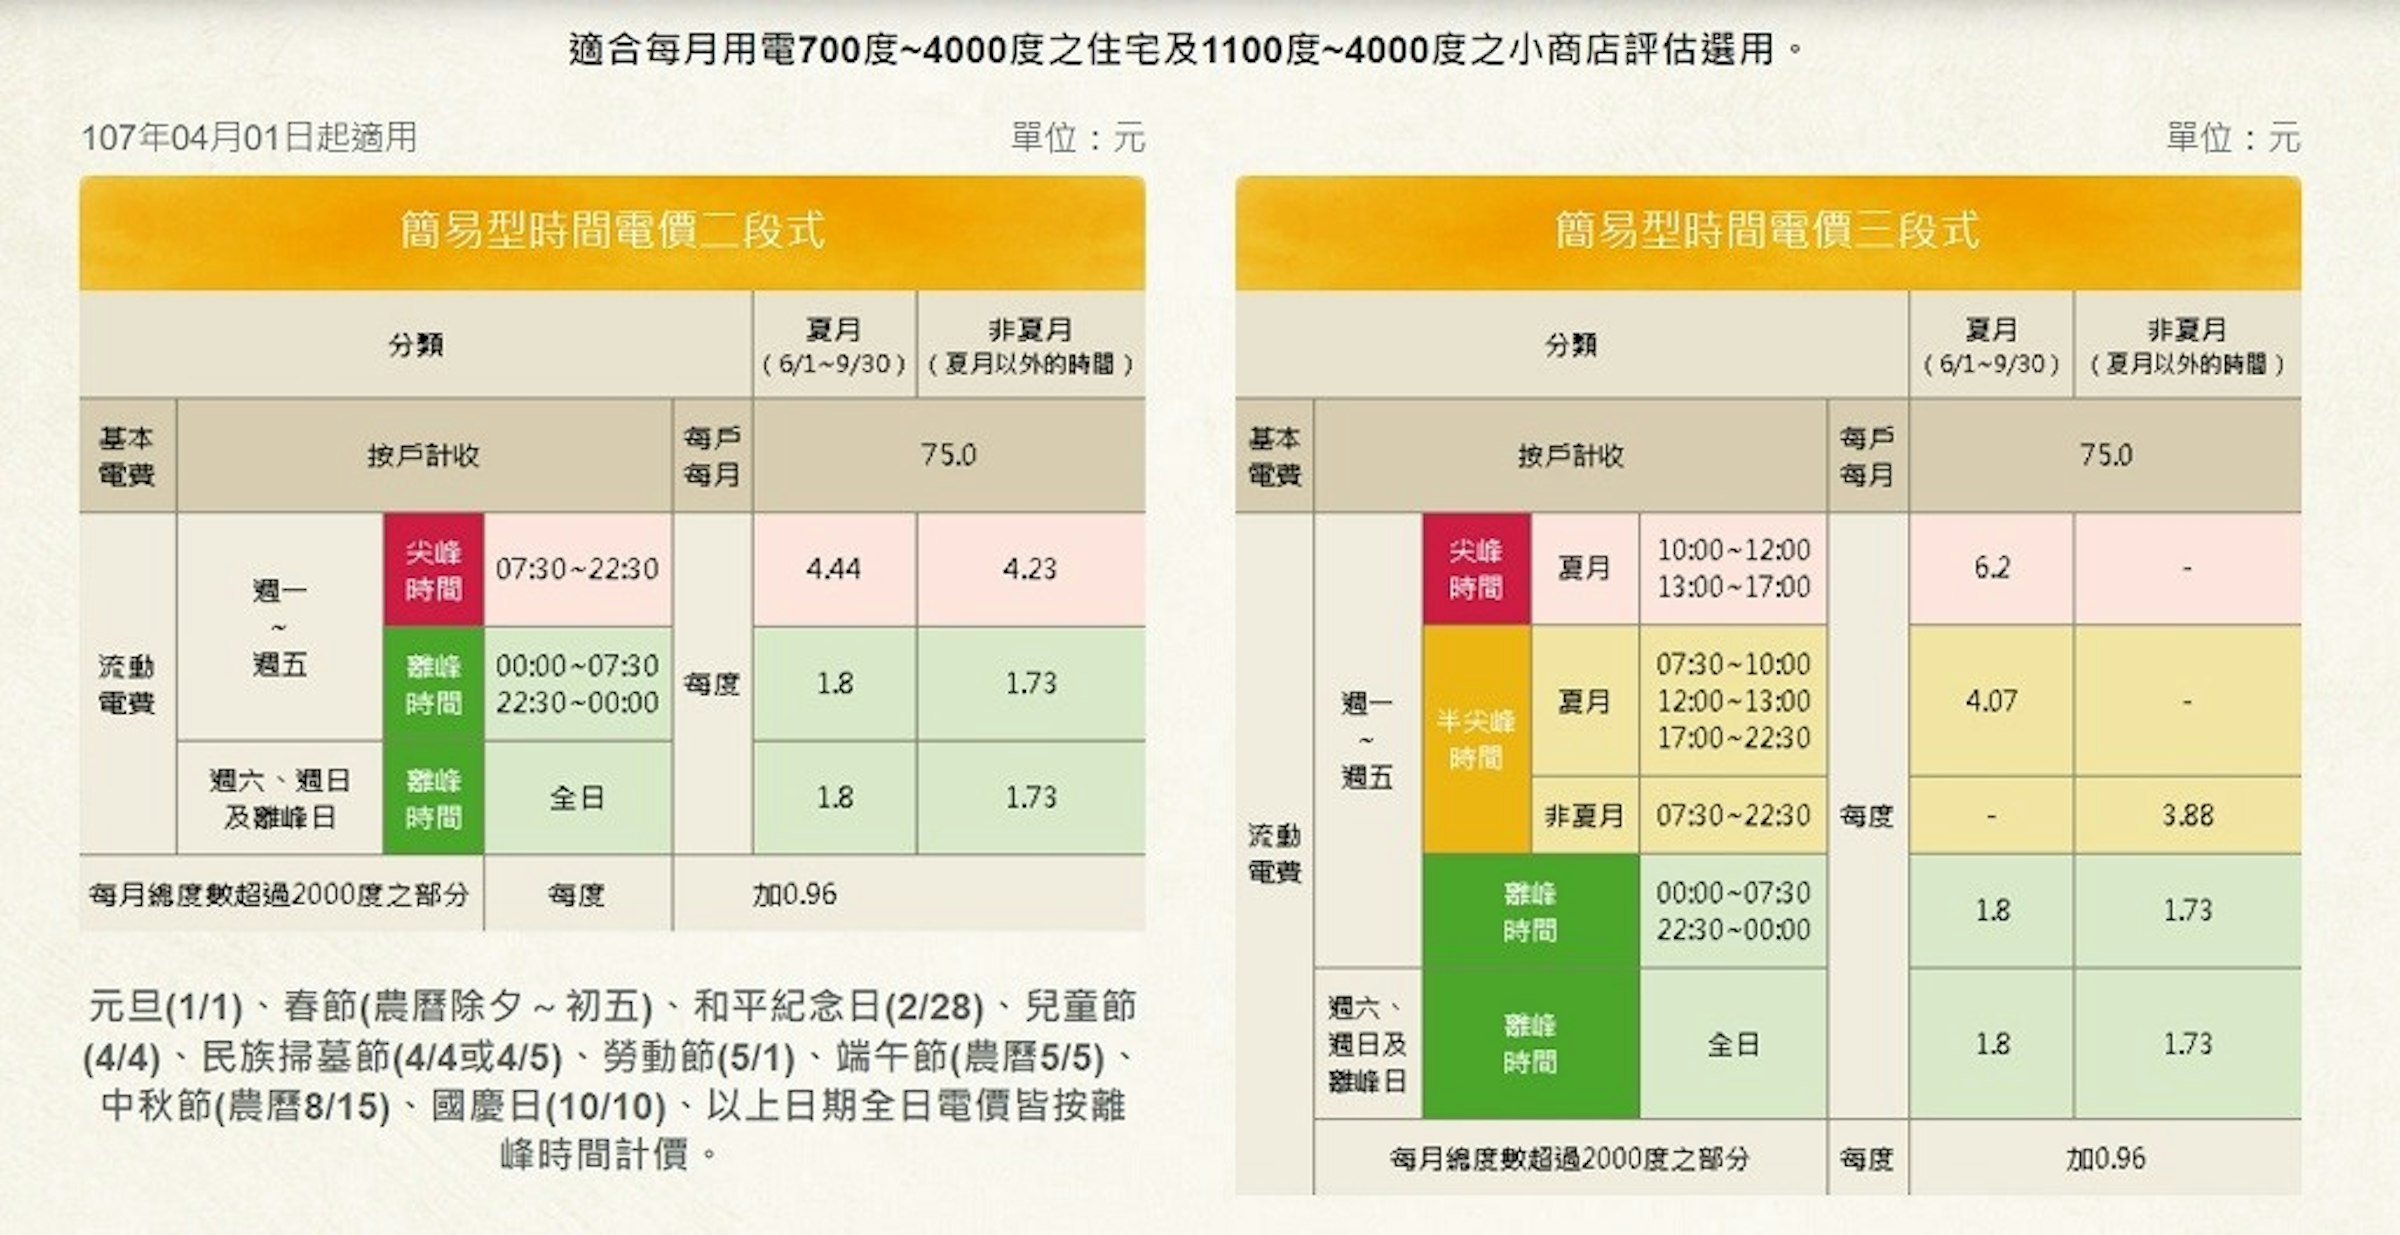 照片中提到了107年04月01日起適用、基本、電費，包含了時間電價、台灣電力公司、電力、時間電價試算、千瓦時